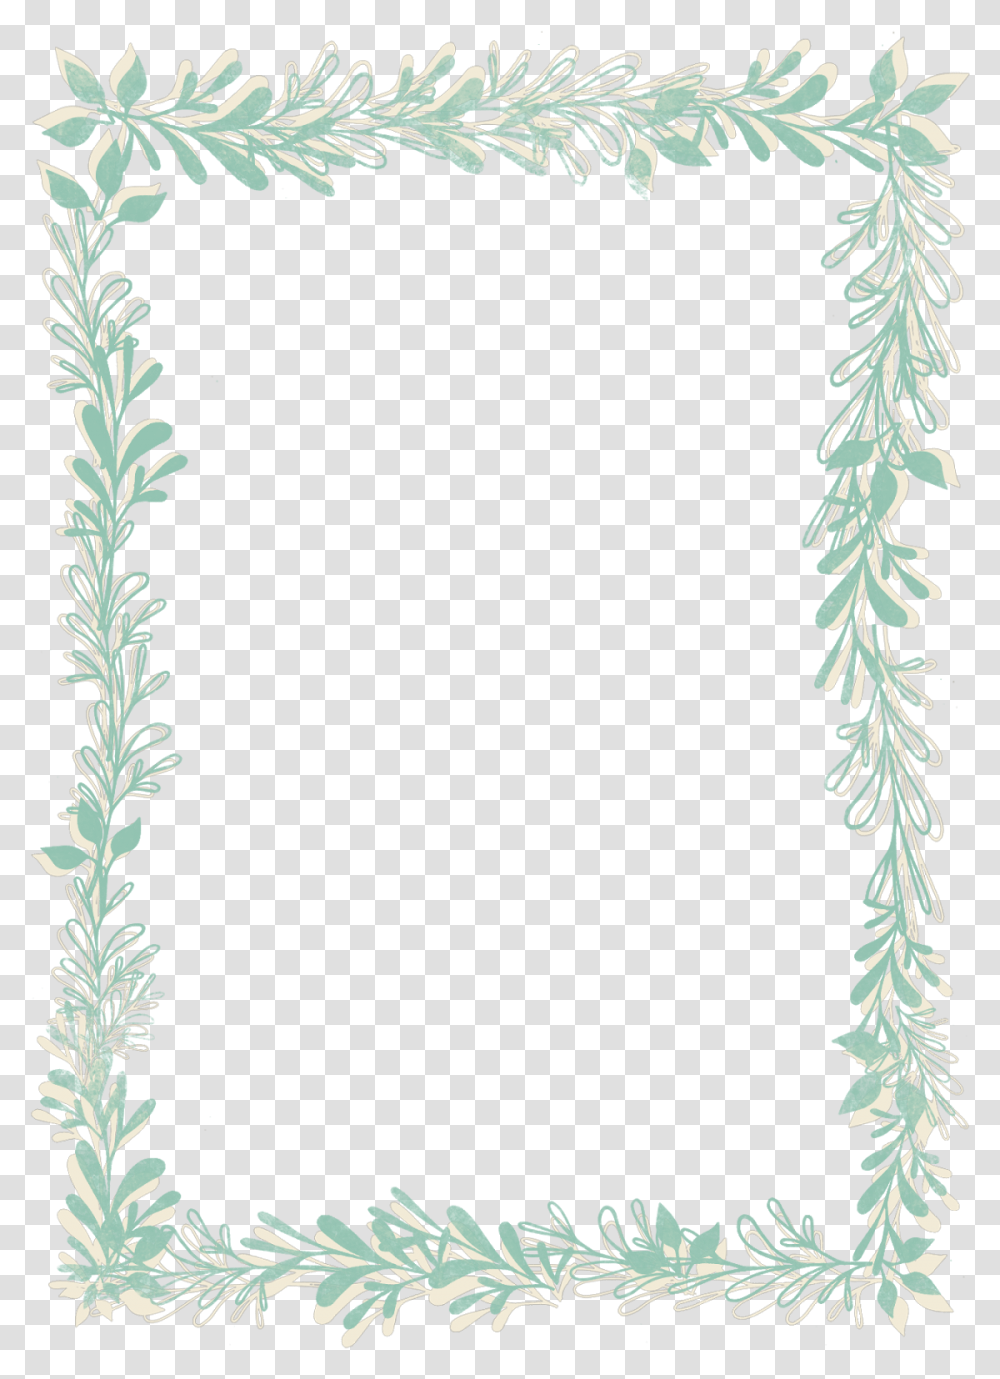 Watercolor Leaves Frame Watercolor Leaf Frame, Plant, Potted Plant, Vase, Jar Transparent Png